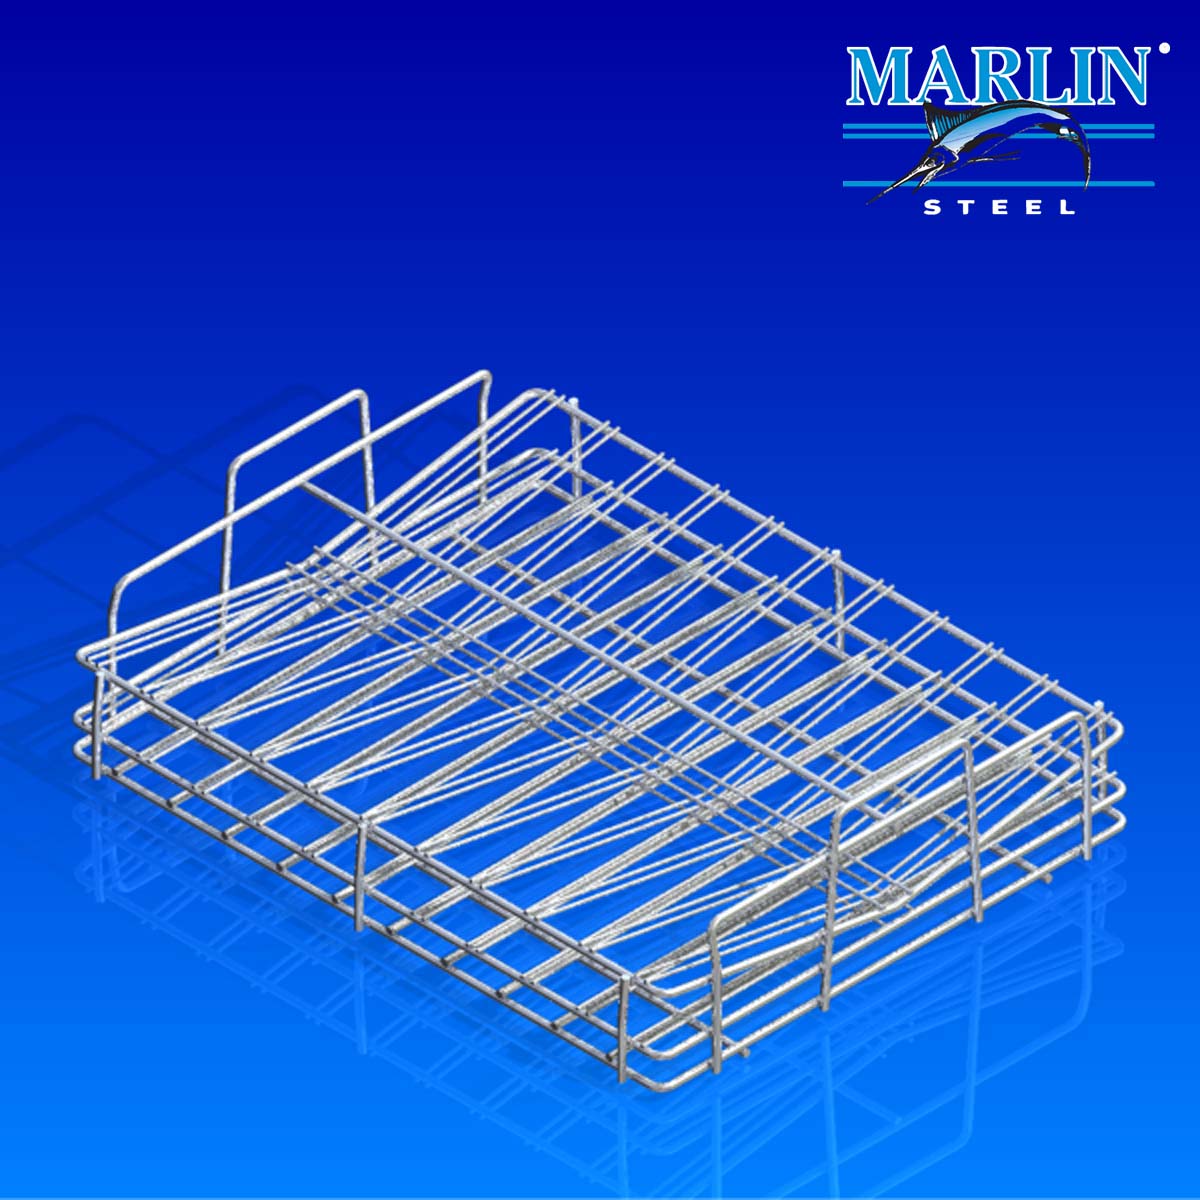 伟德APPMarlin Steel Wire Basket with Handles .jpg